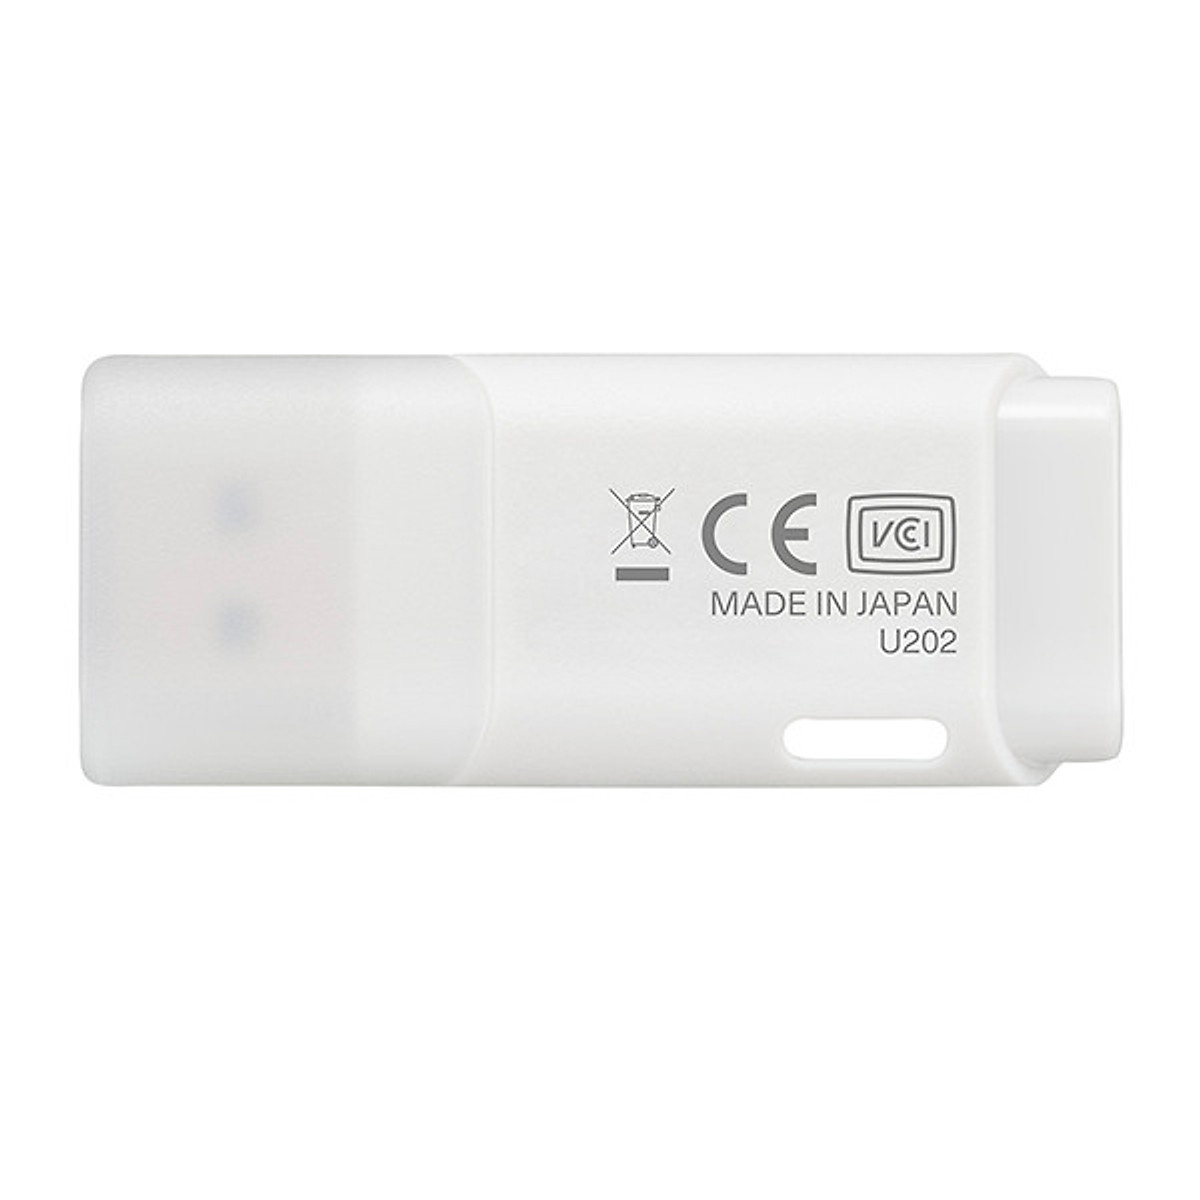 USB KIOXIA 16GB U202 chuẩn 2.0 (Trắng) - Hàng chính hãng FPT phân phối